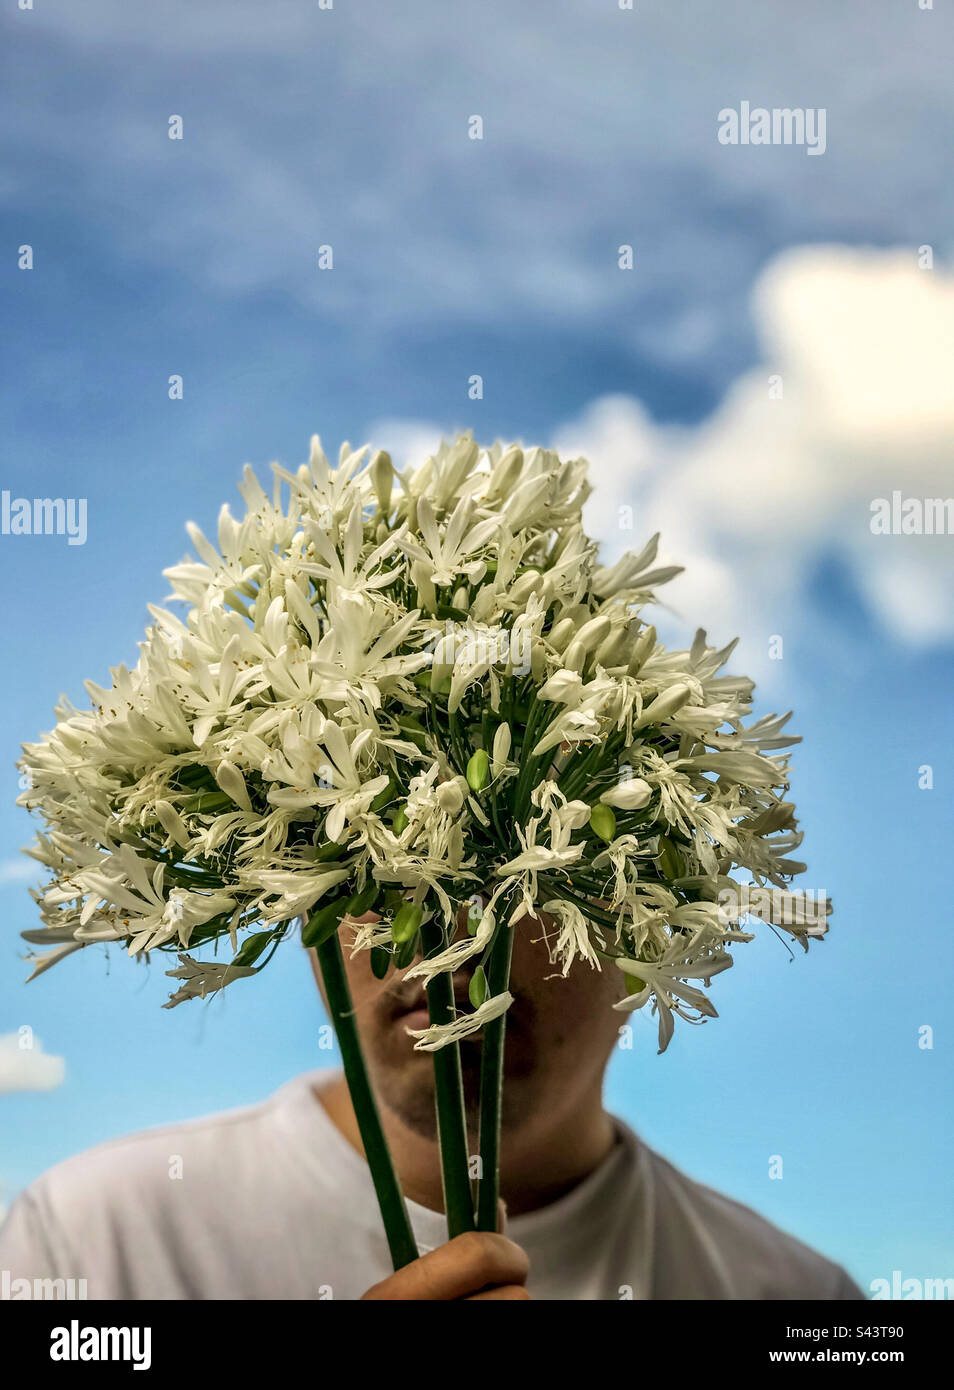 Primo piano ritratto di un giovane che tiene un bouquet di fiori bianchi di Agapanthus, noti anche come giglio del Nilo o giglio africano, davanti al suo volto contro il cielo azzurro pallido con una nuvola bianca. Estate. Foto Stock